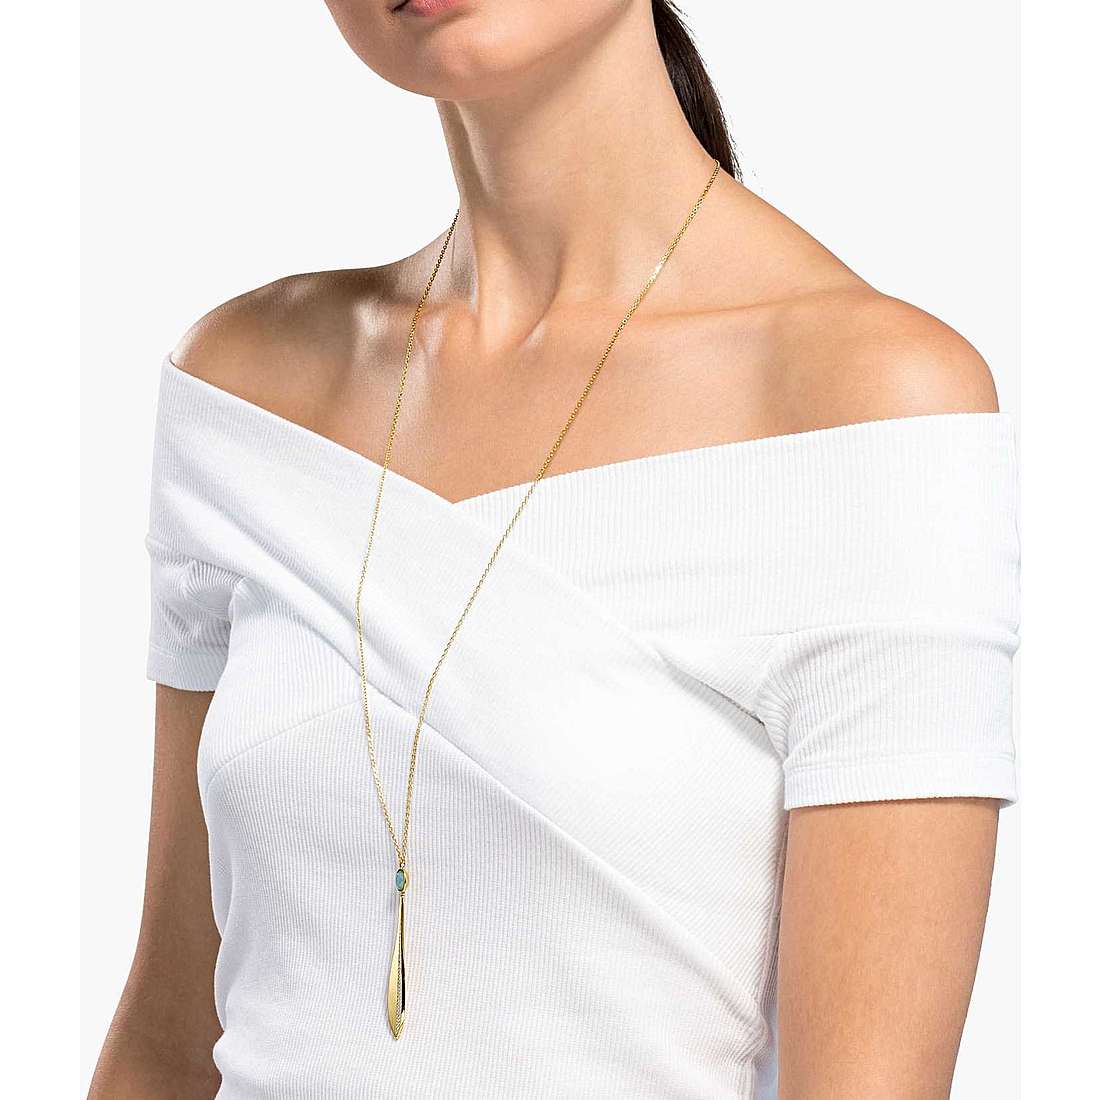 Swarovski necklaces Stunning woman 5515463 wearing